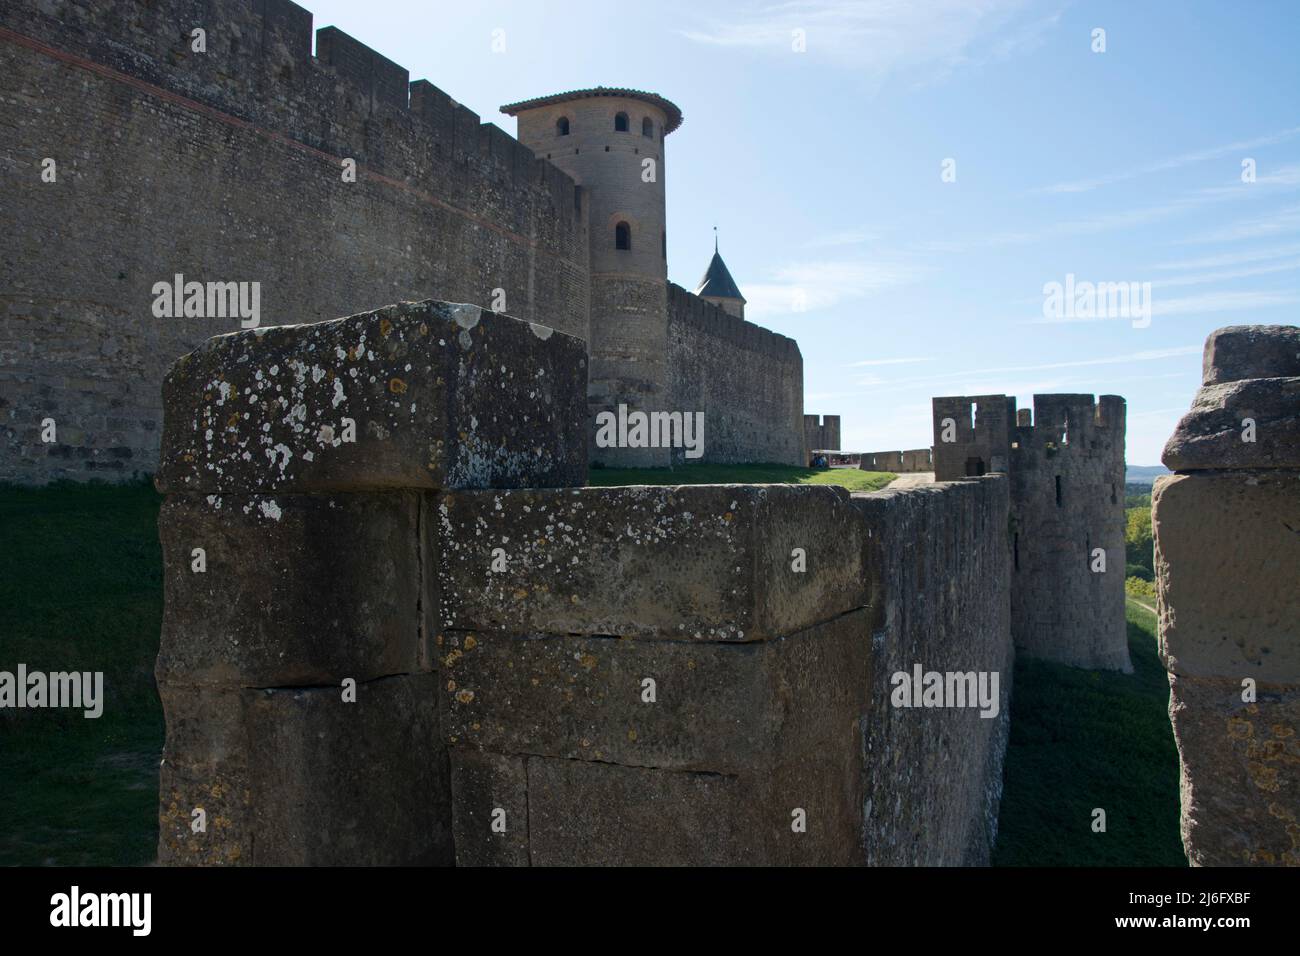 Die Massive Festungsstadt von Carcassonne im Südwesen Frankreichs Foto Stock